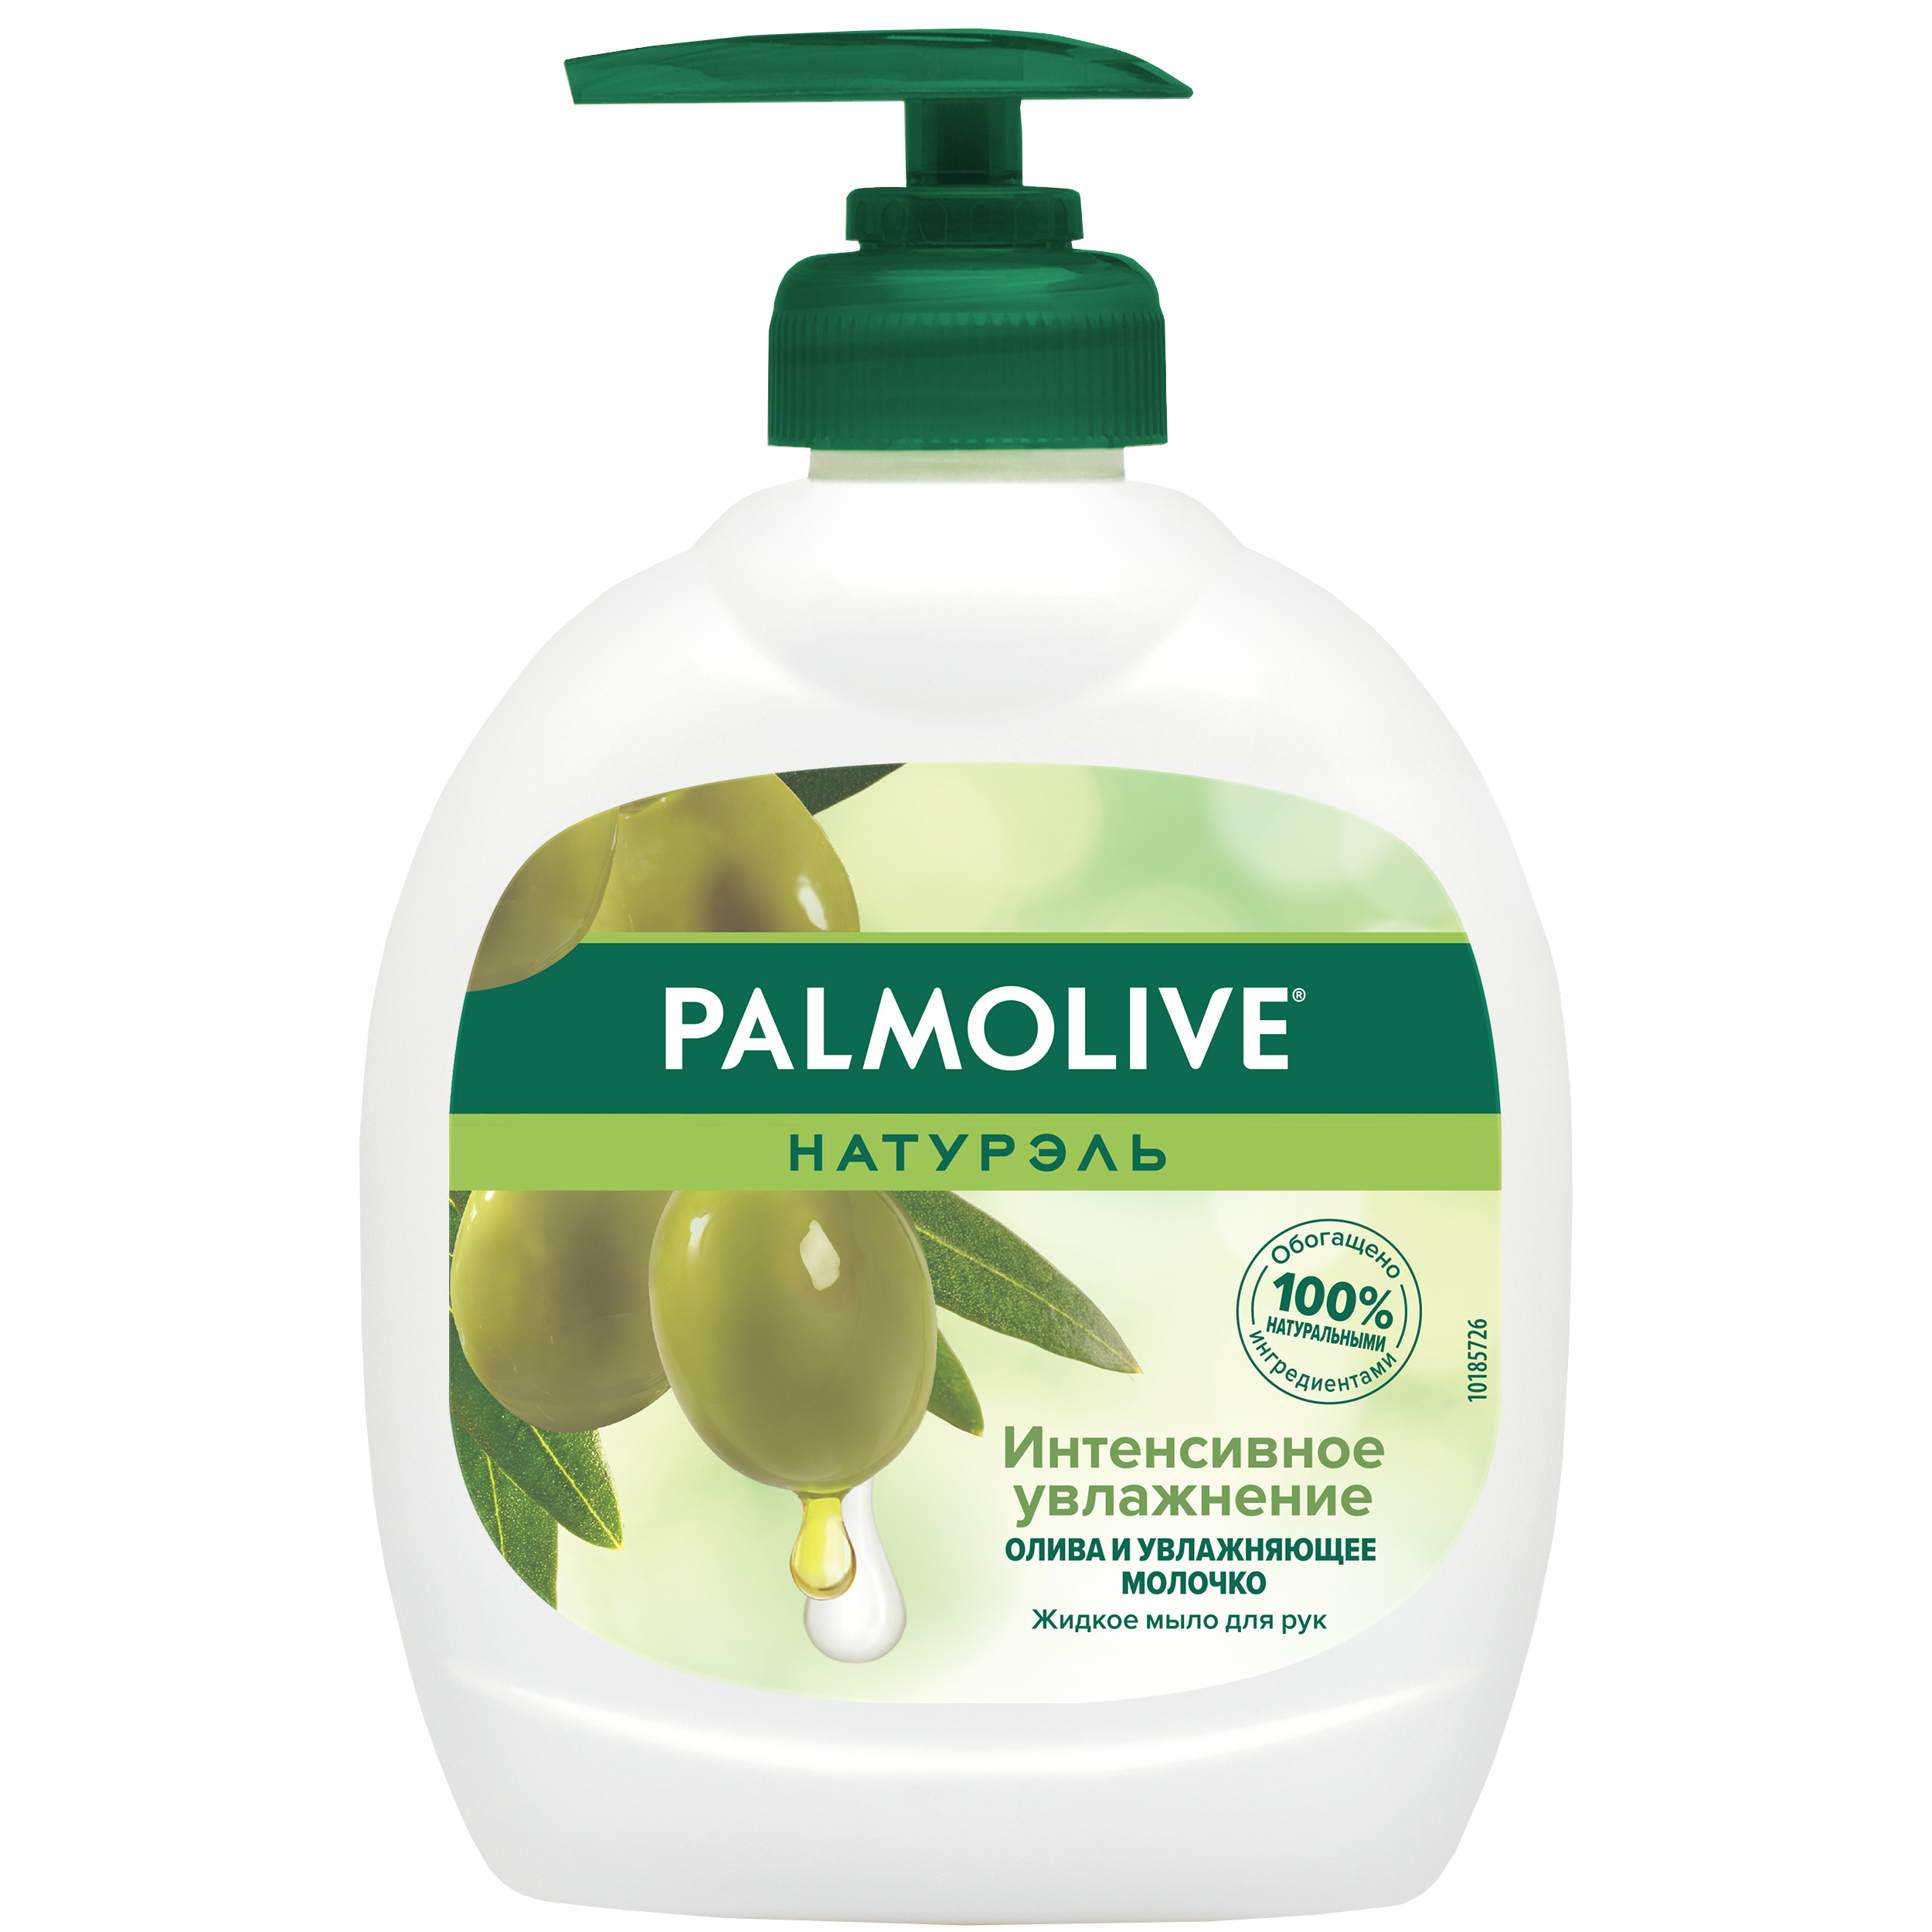 Мыло жидкое для рук Palmolive Интенсивное Увлажнение с увлажняющим молочком 300 мл